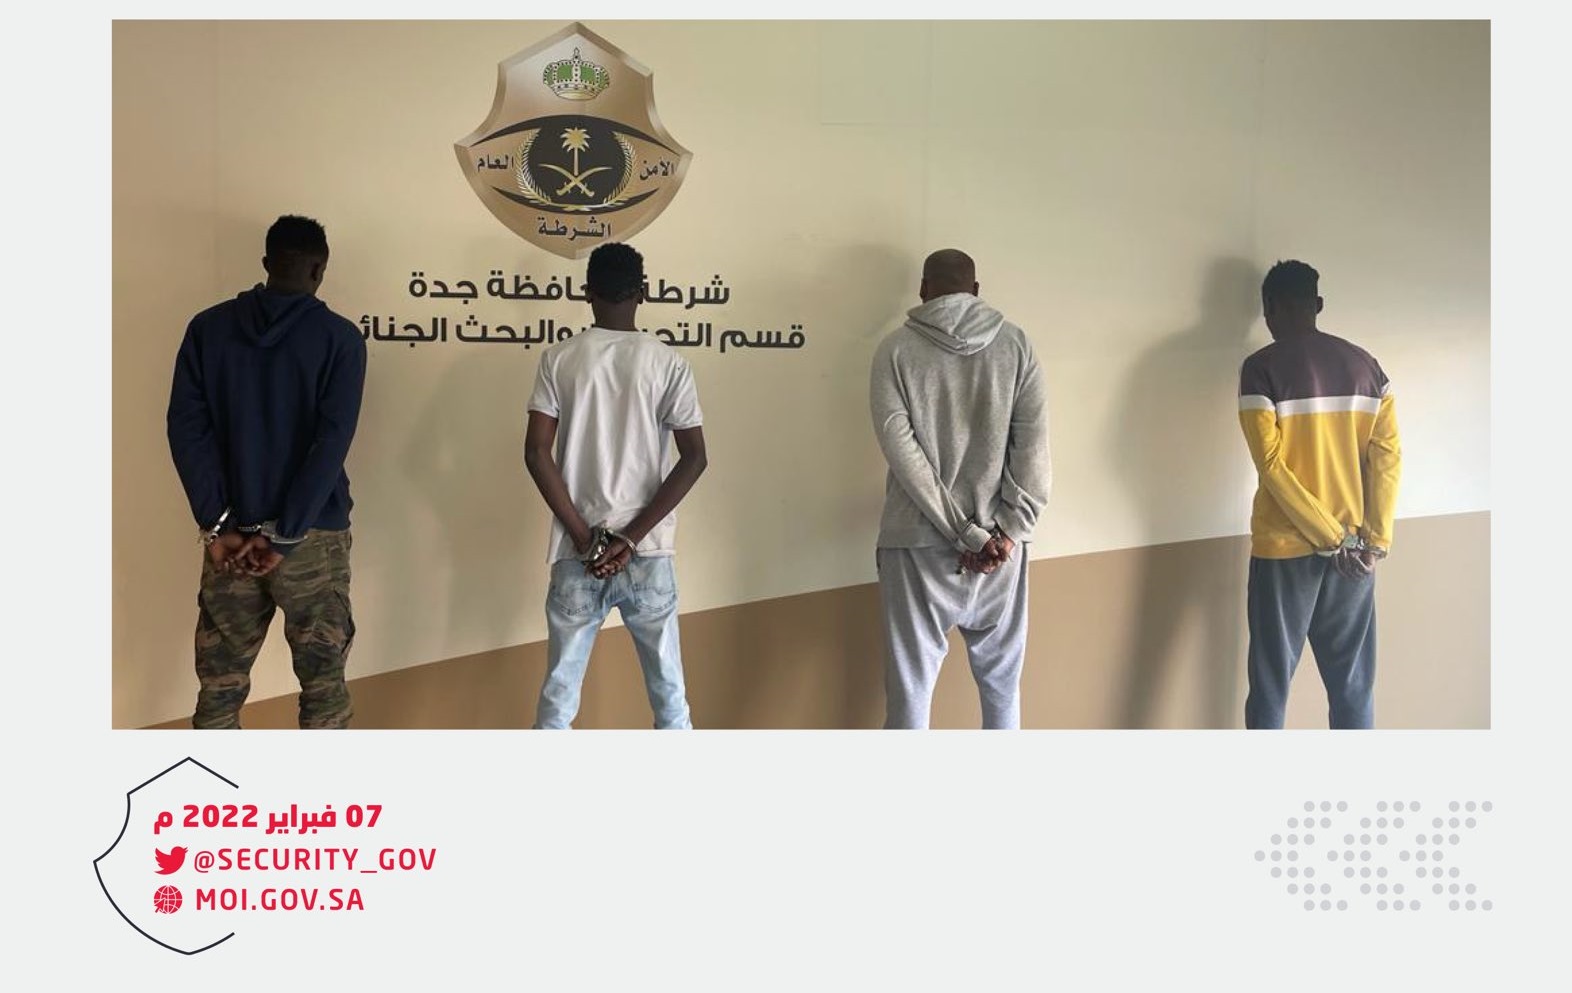 القبض على 4 أشخاص ارتكبوا حوادث سرقة وسلب في جدة